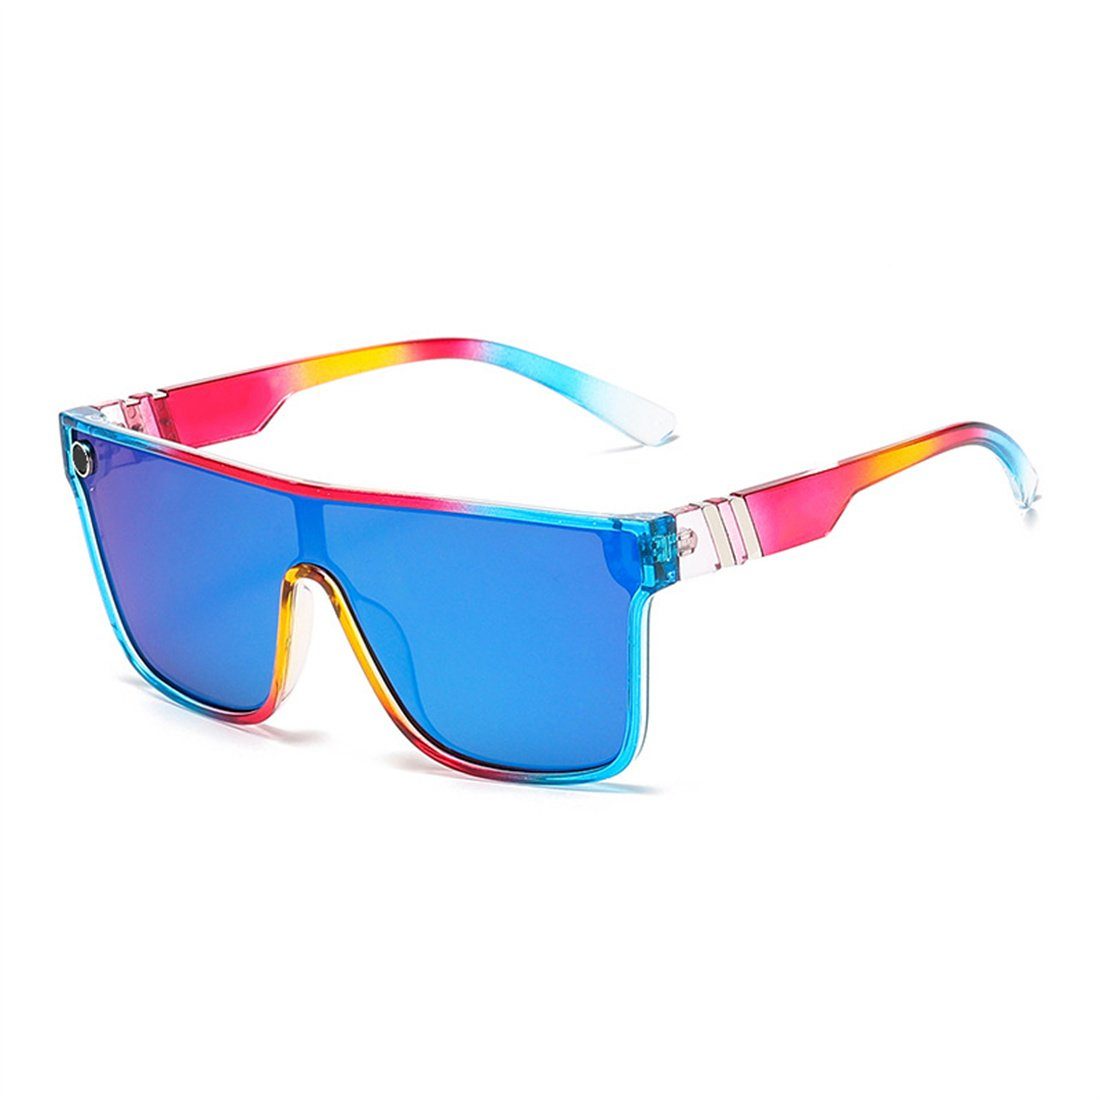 und Frauen, für Männer Outdoor-Sonnenbrillen Radsport-Sonnenbrillen DÖRÖY Sonnenbrille